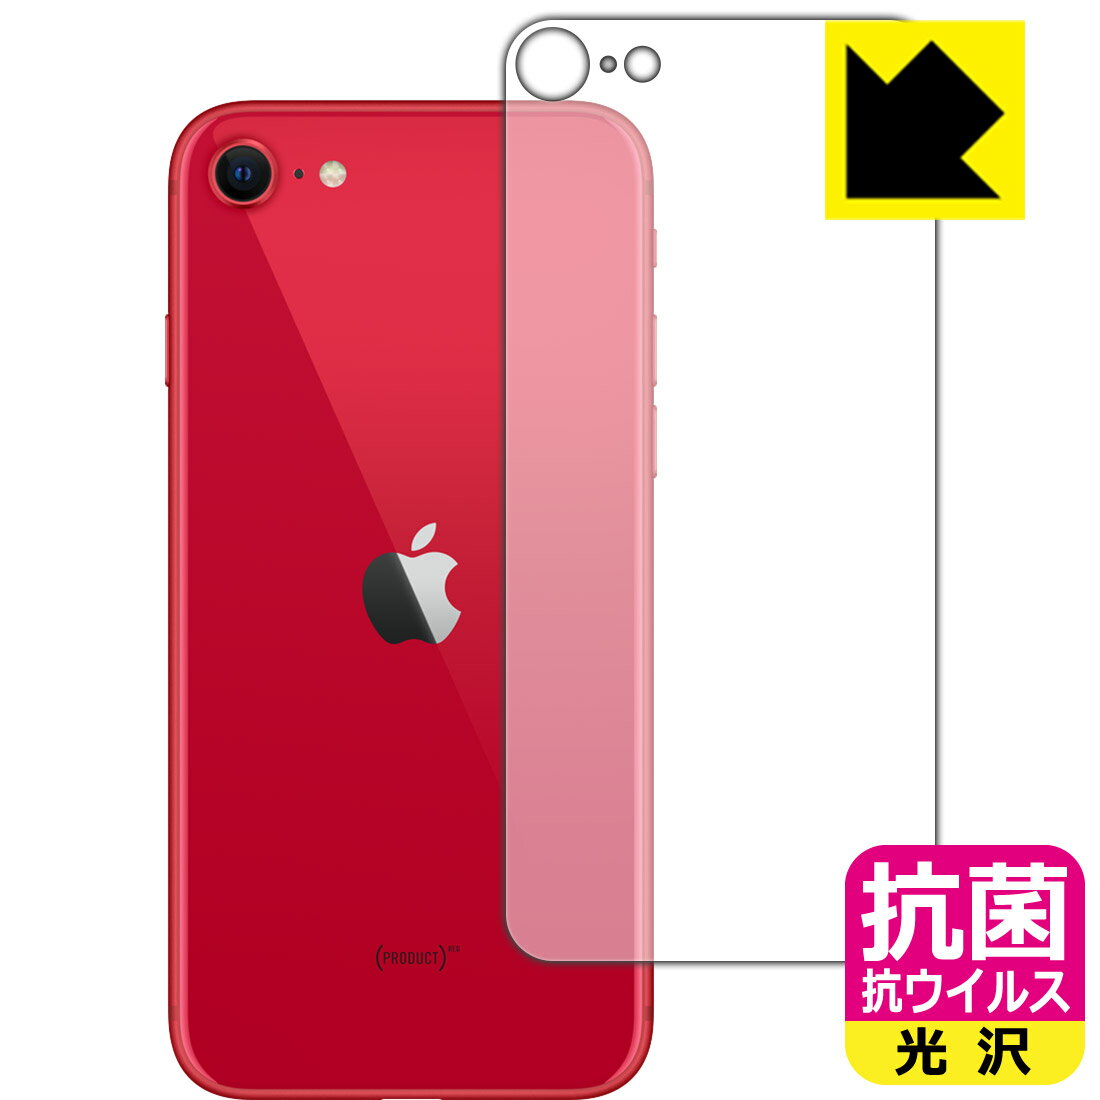 抗菌 抗ウイルス【光沢】保護フィルム iPhone SE (第2世代) 背面のみ 【O型】 日本製 自社製造直販